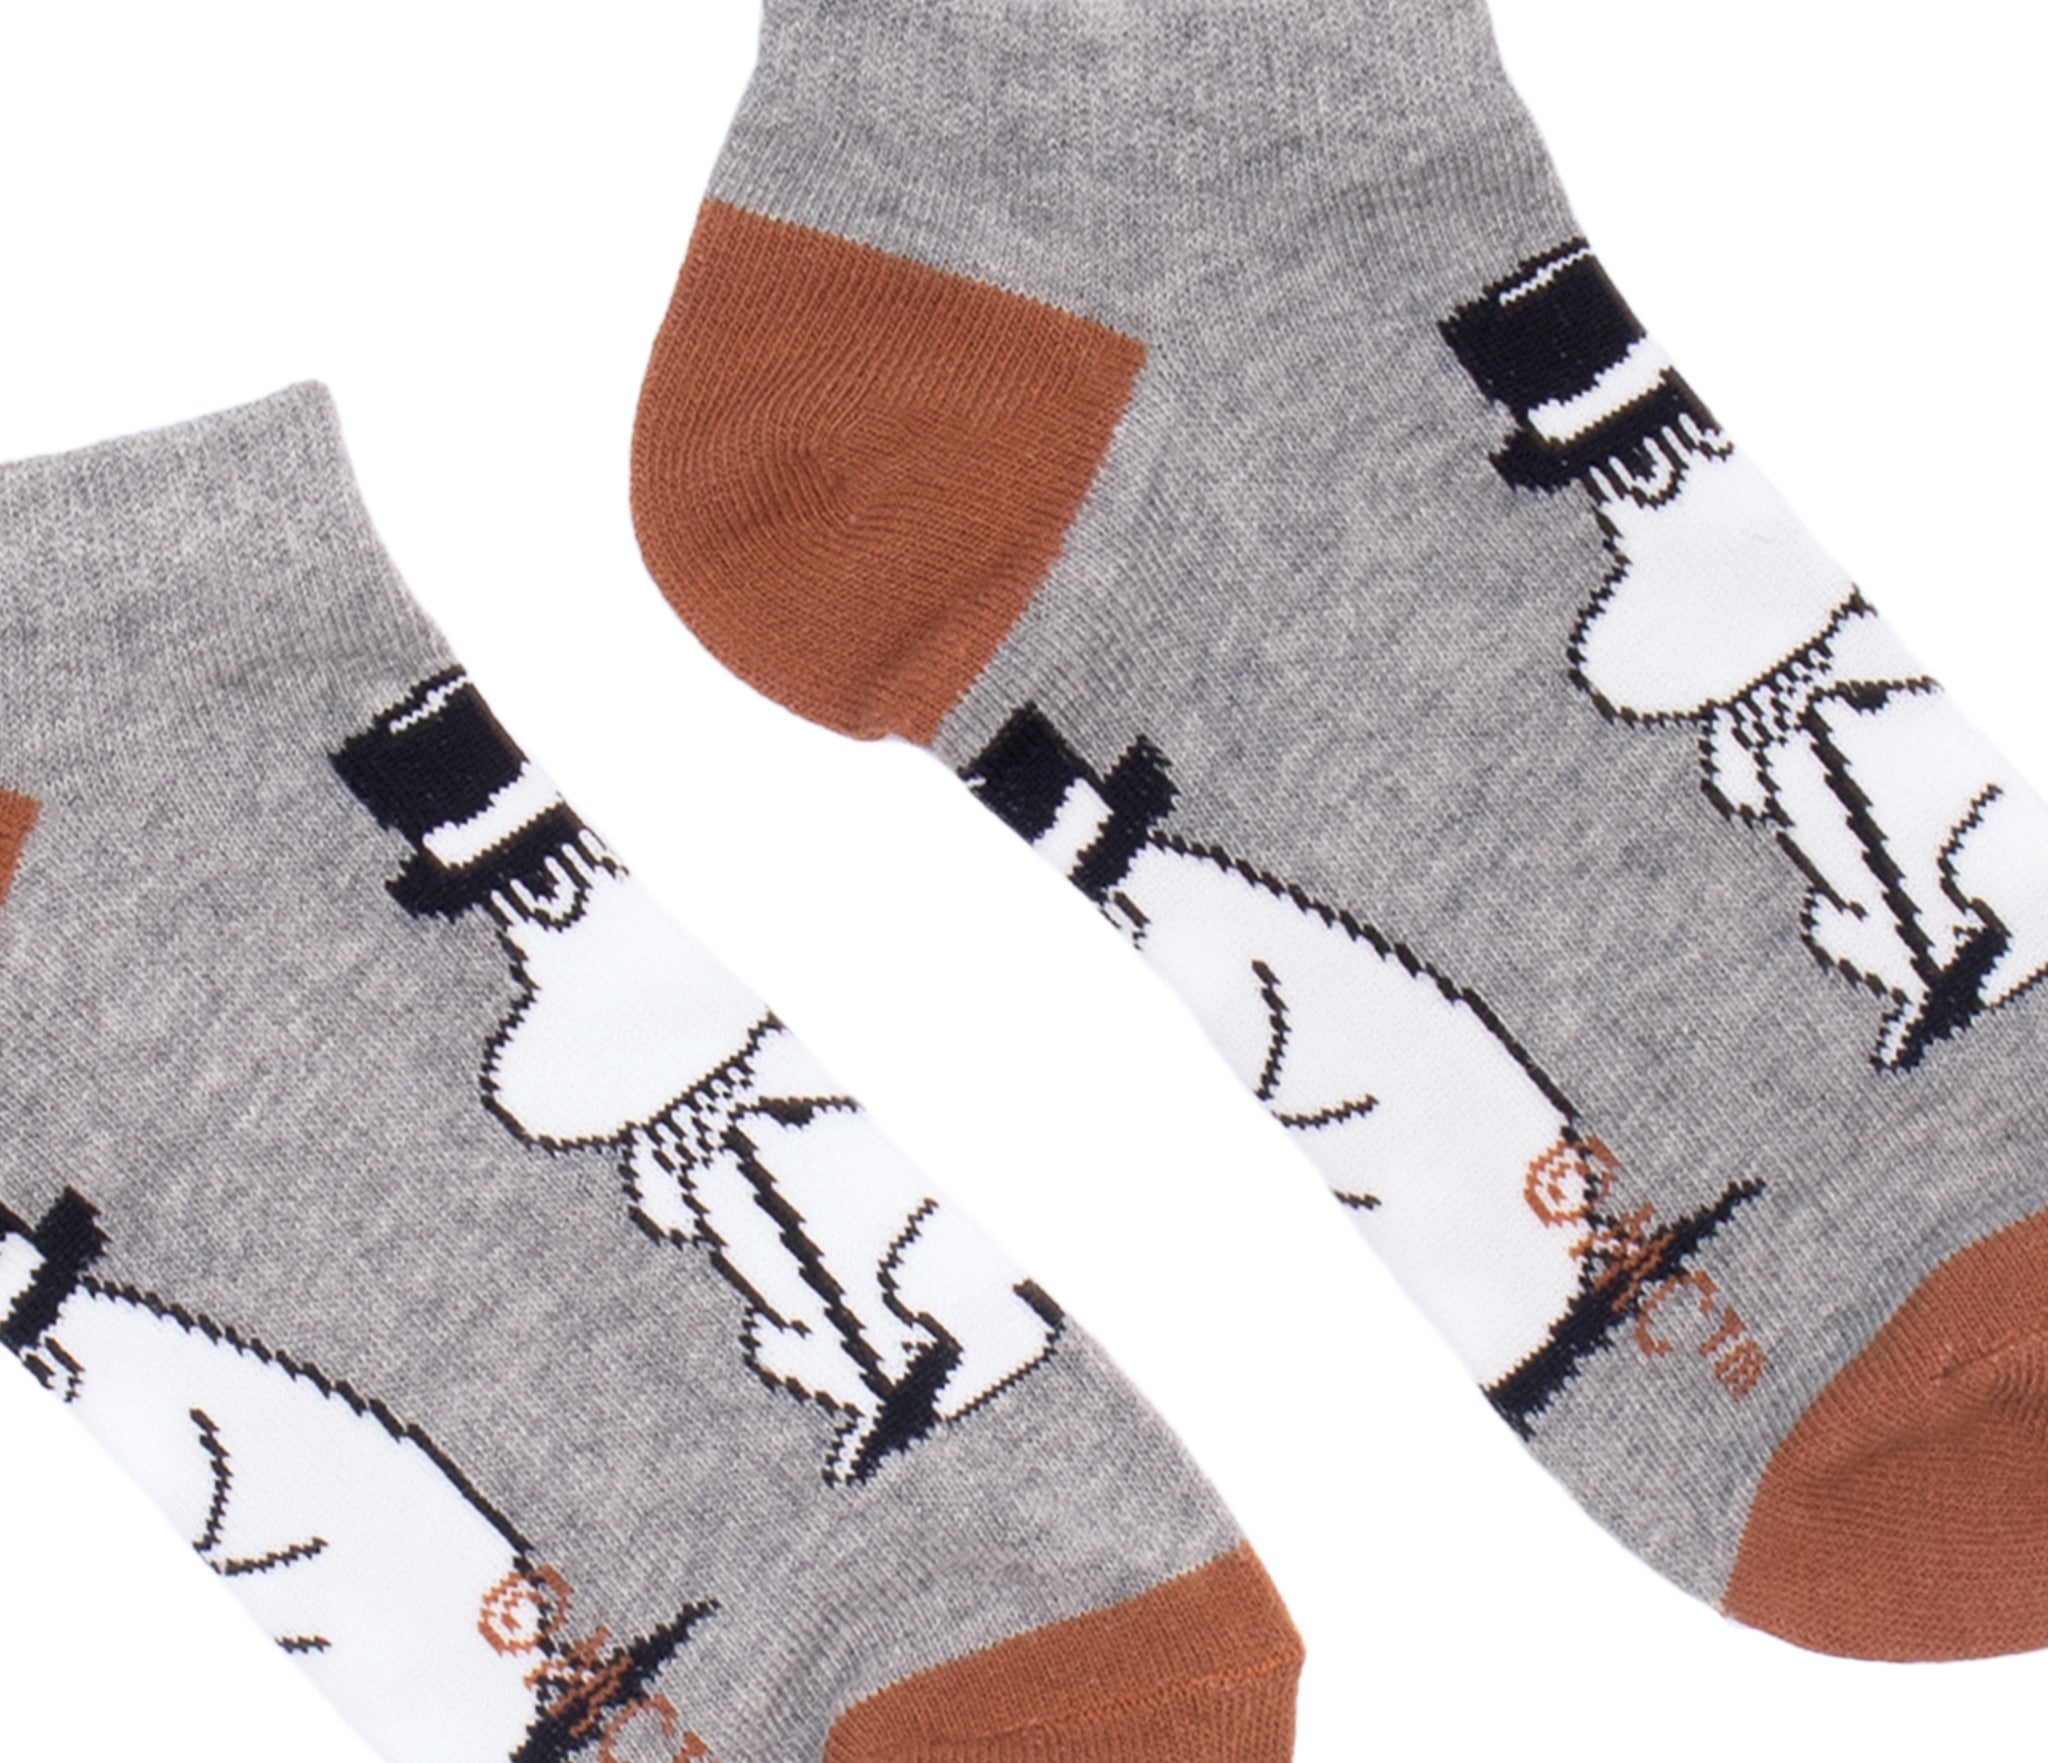 Moominpappa Wondering Men Ankle Socks - Grey